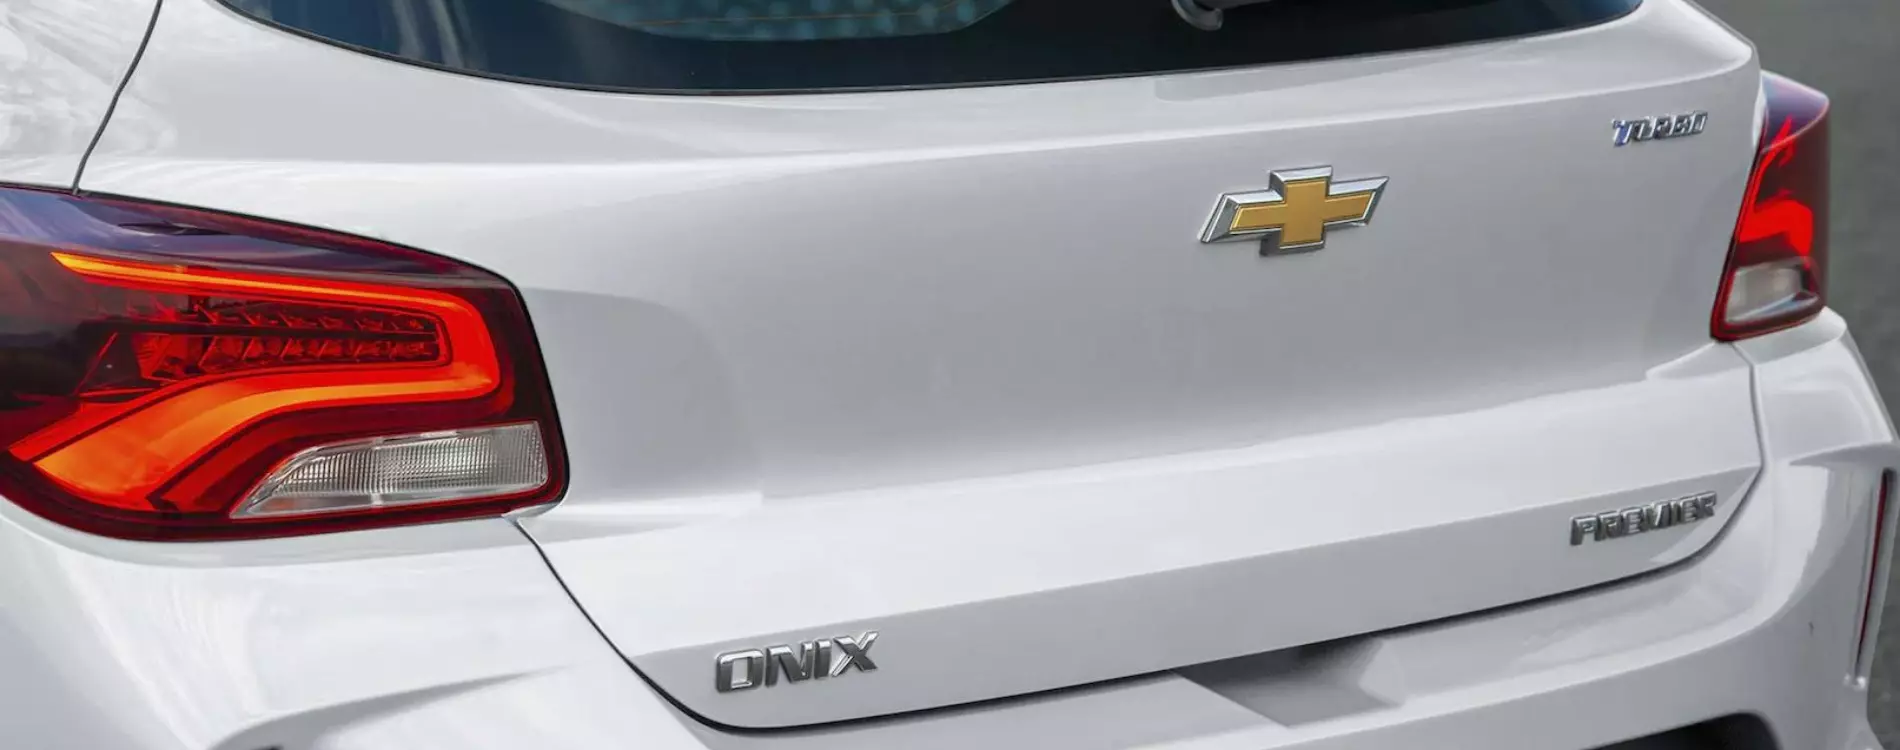 Onix 2023 carro hatch com design moderno